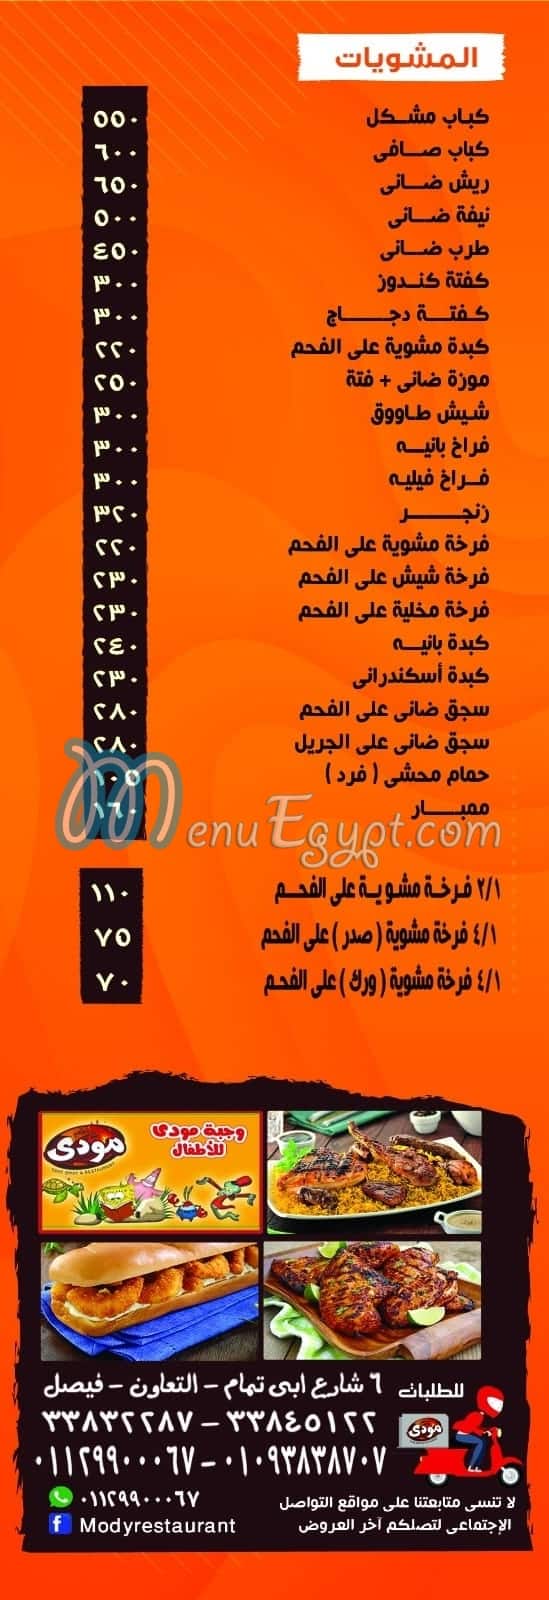 Mody menu Egypt